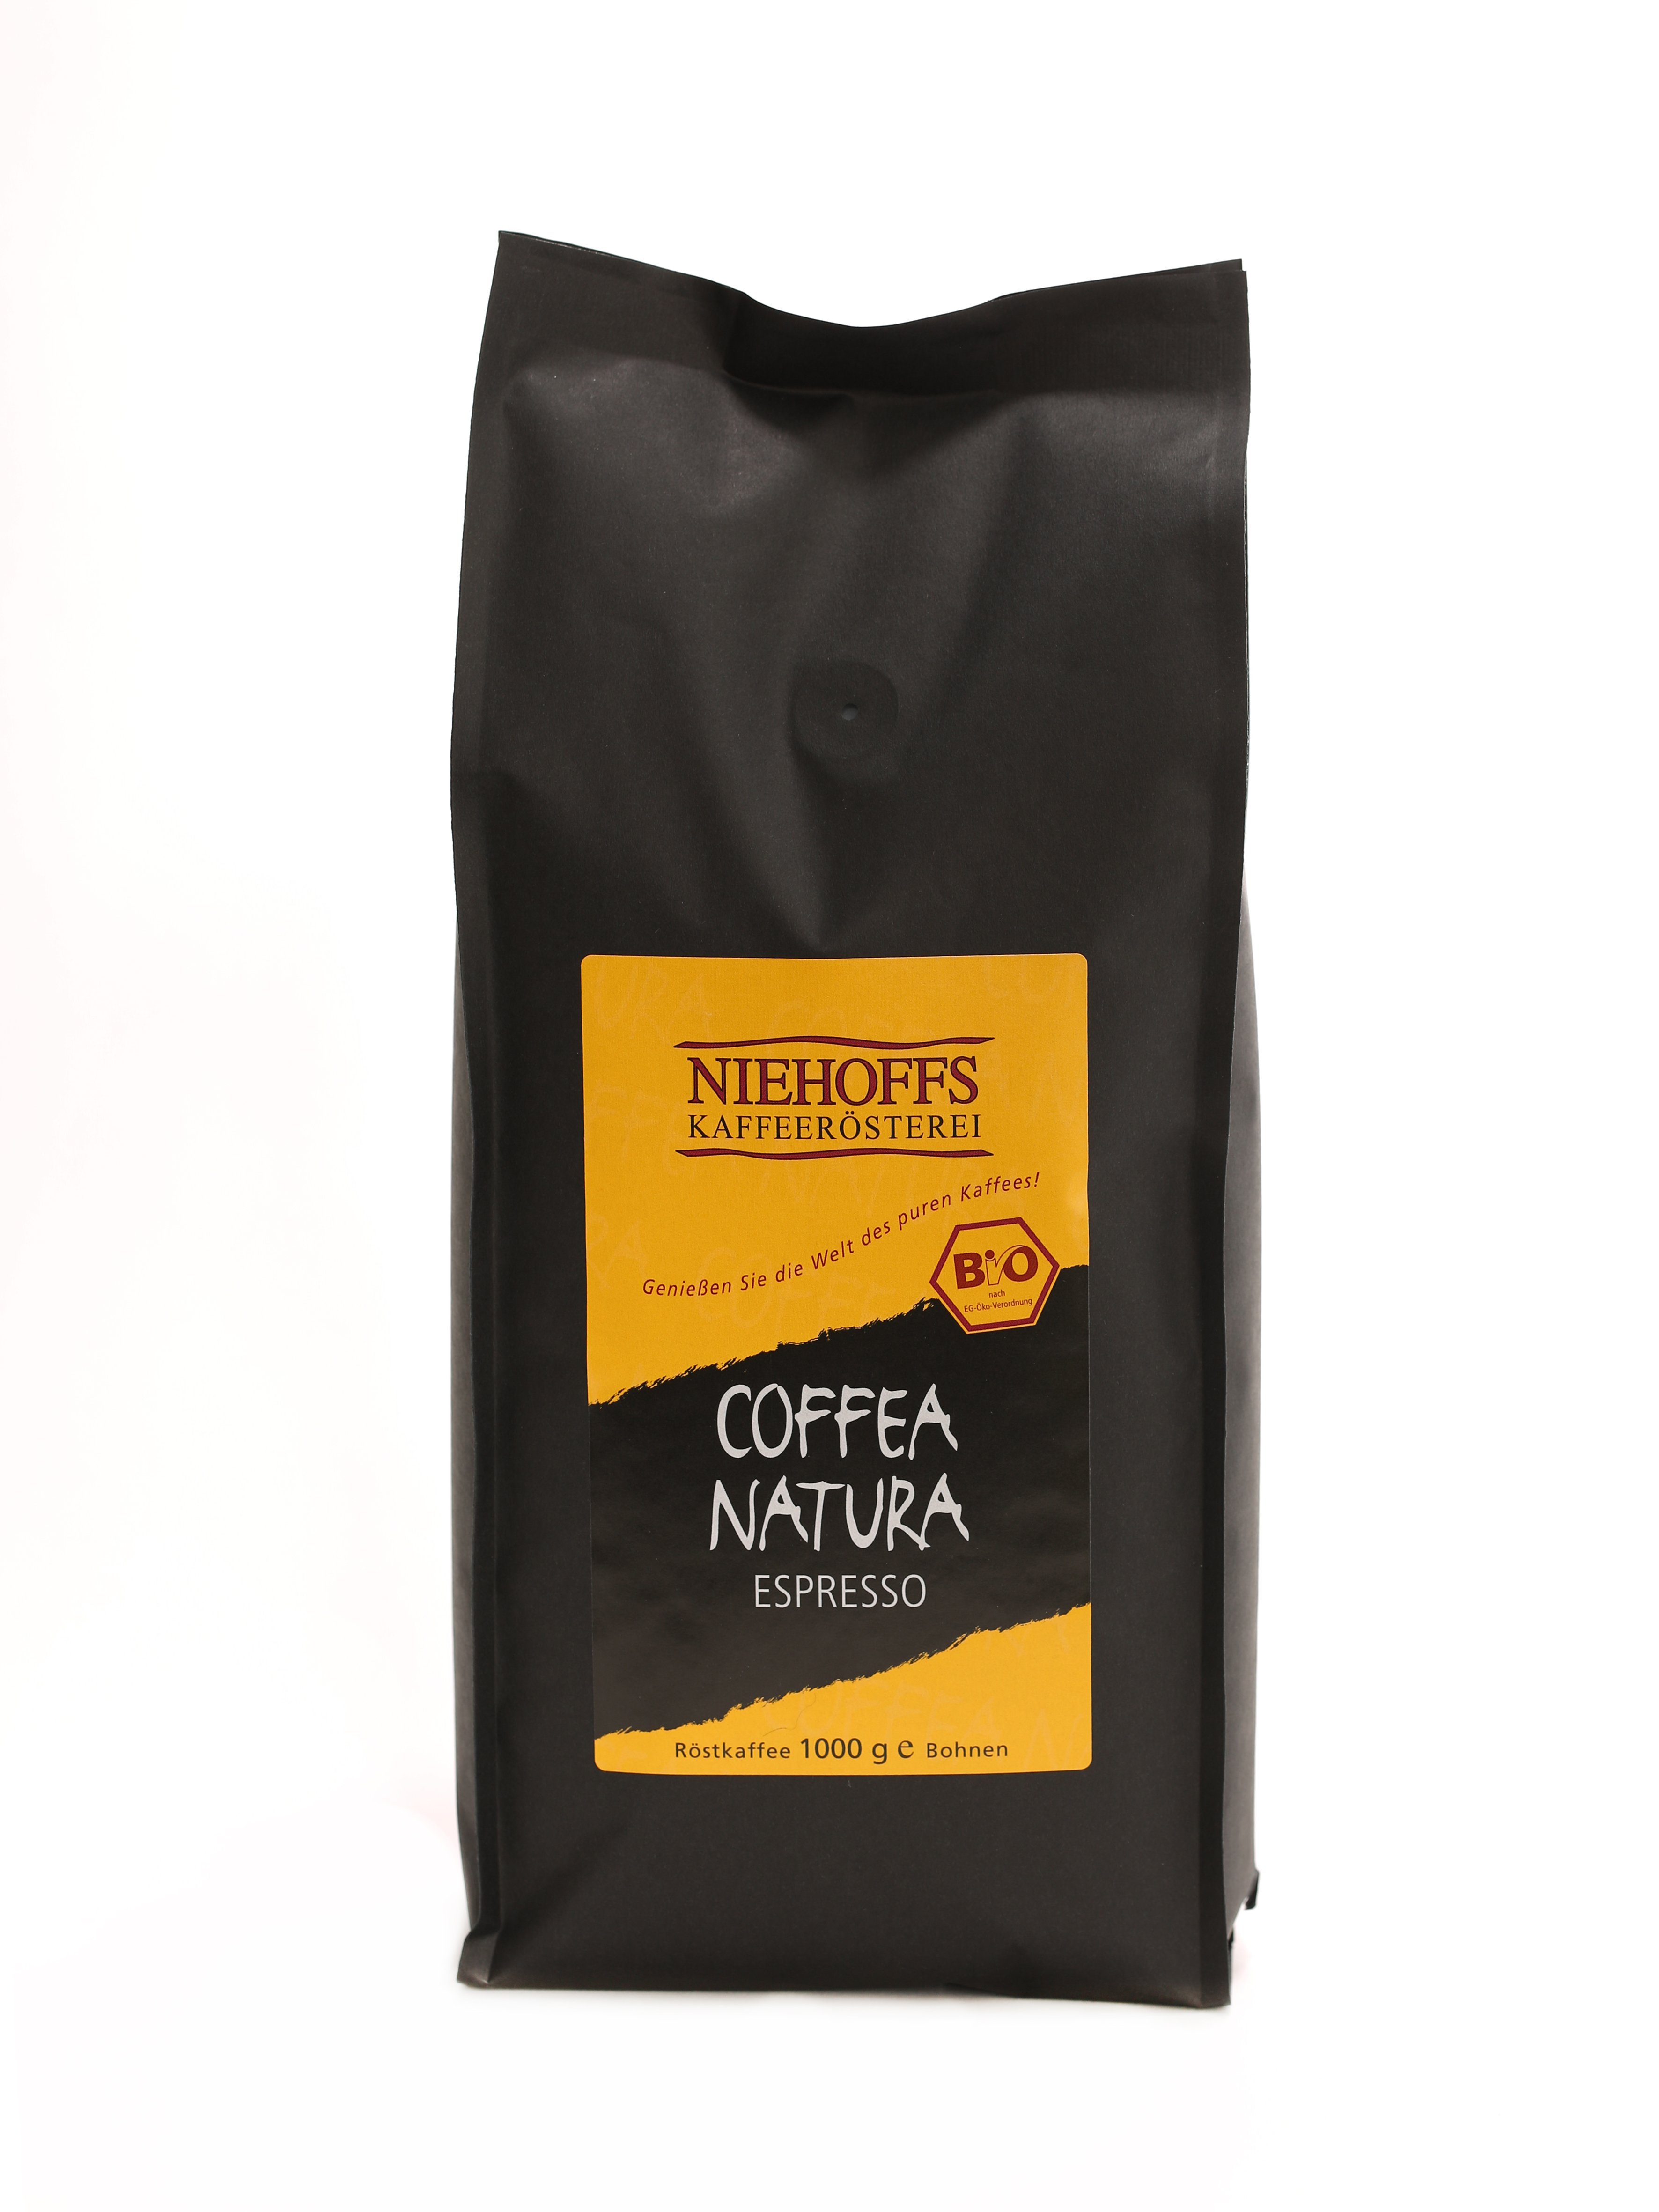 Coffea Natura Espresso